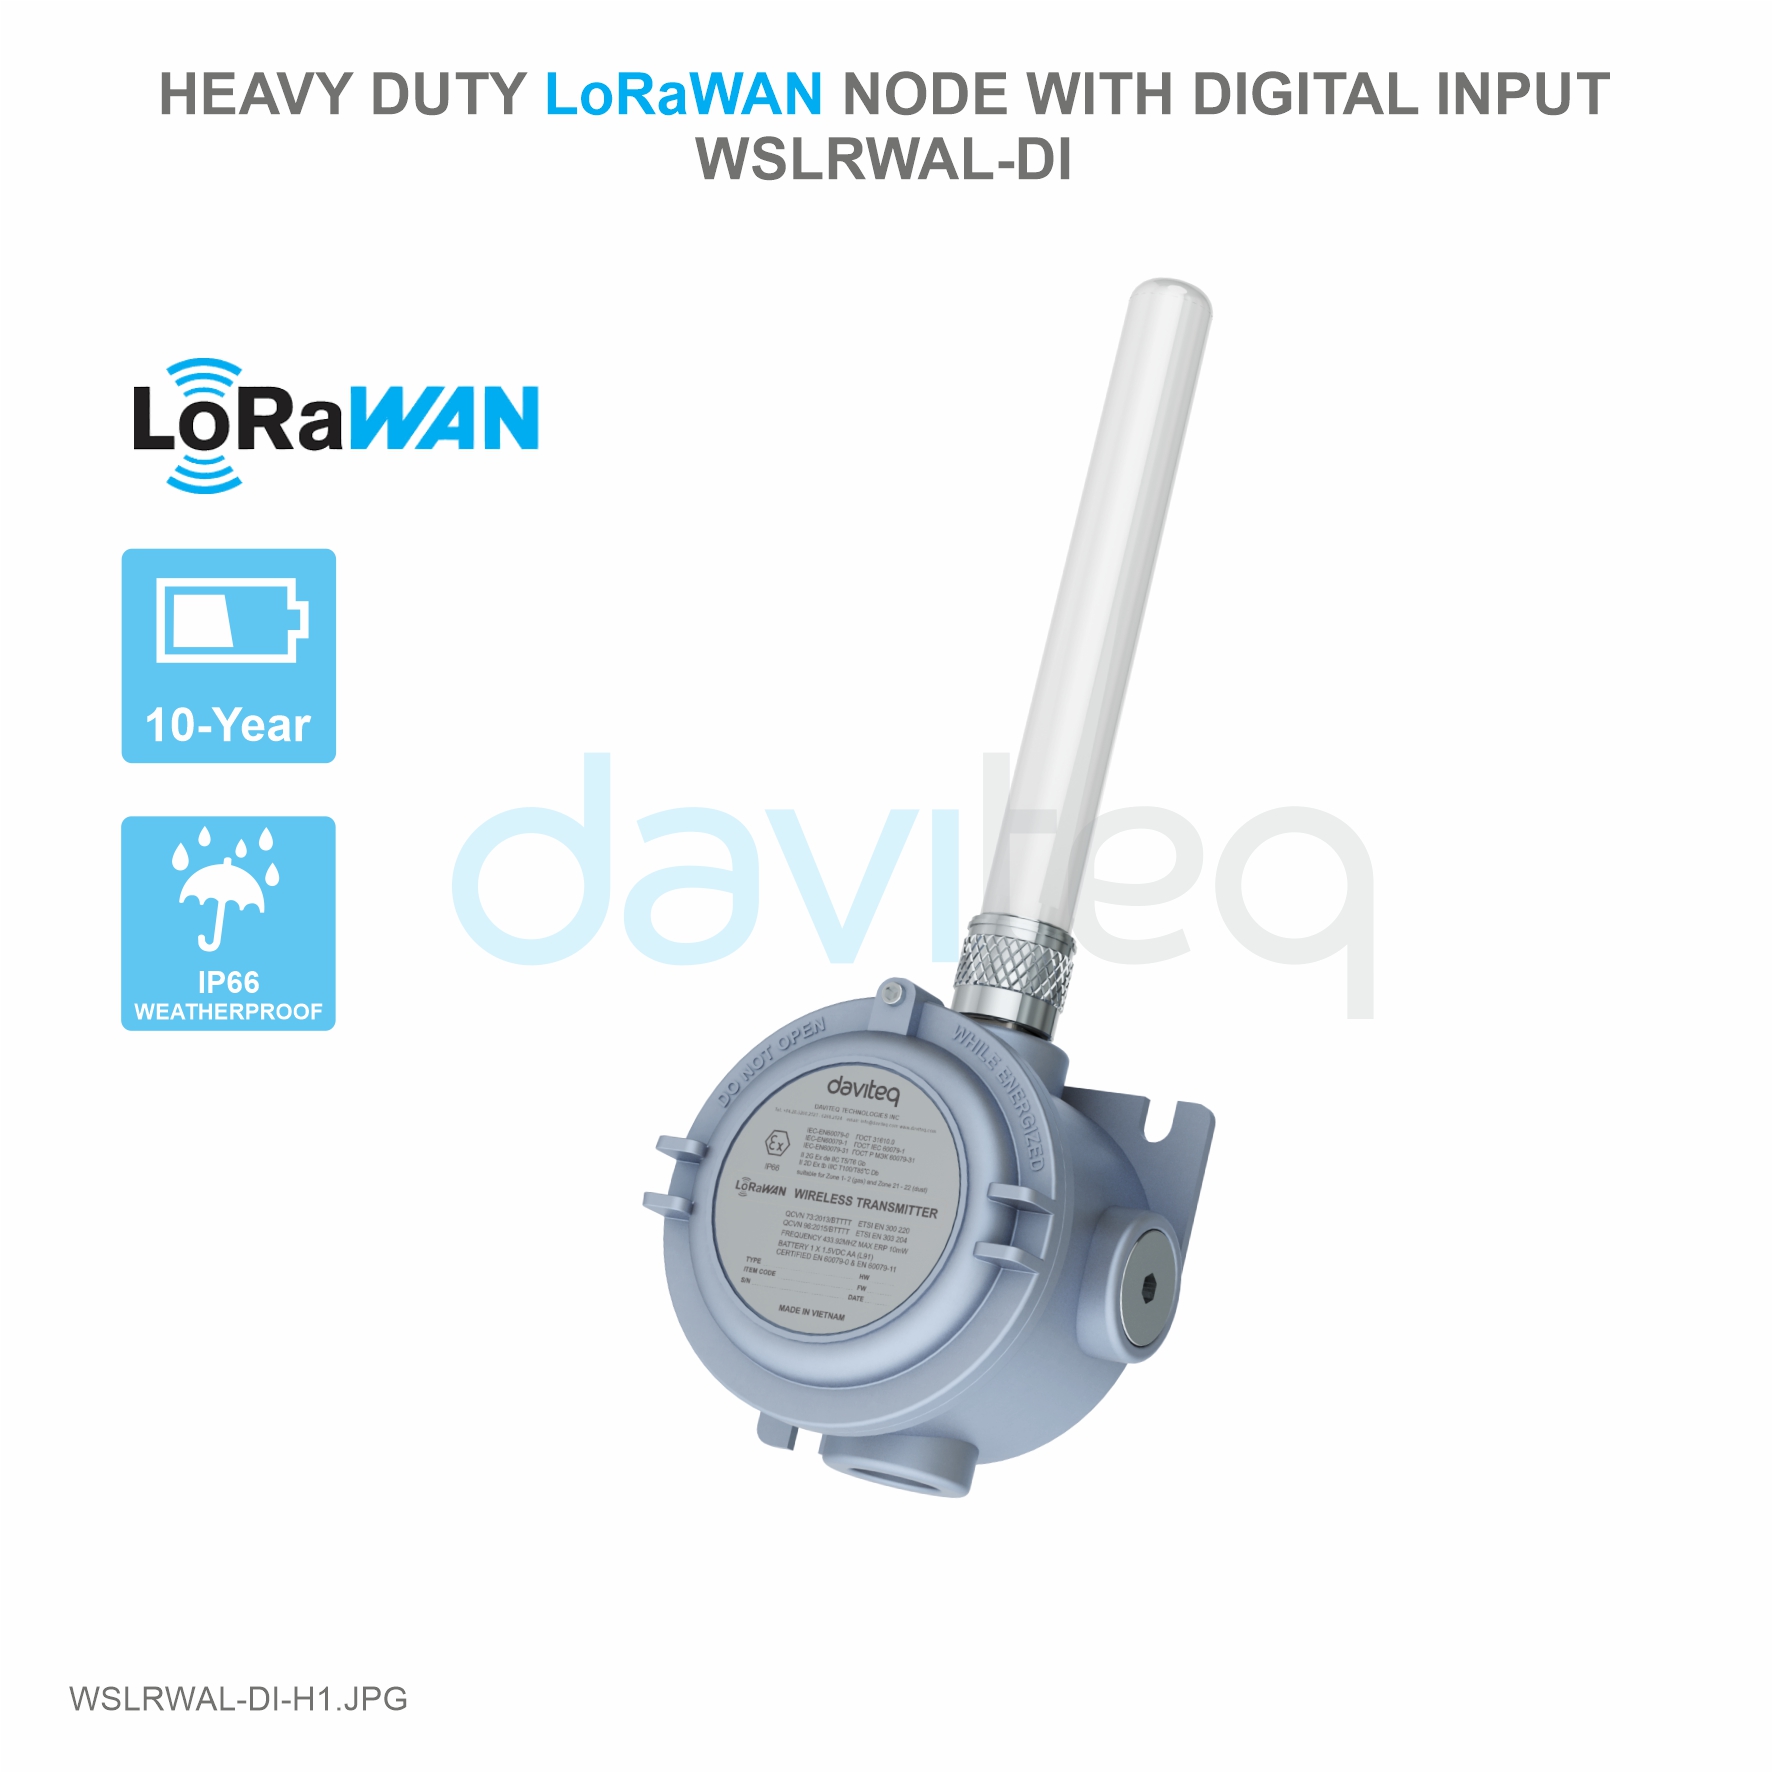 Heavy Duty LoRaWAN Node with Digital Input